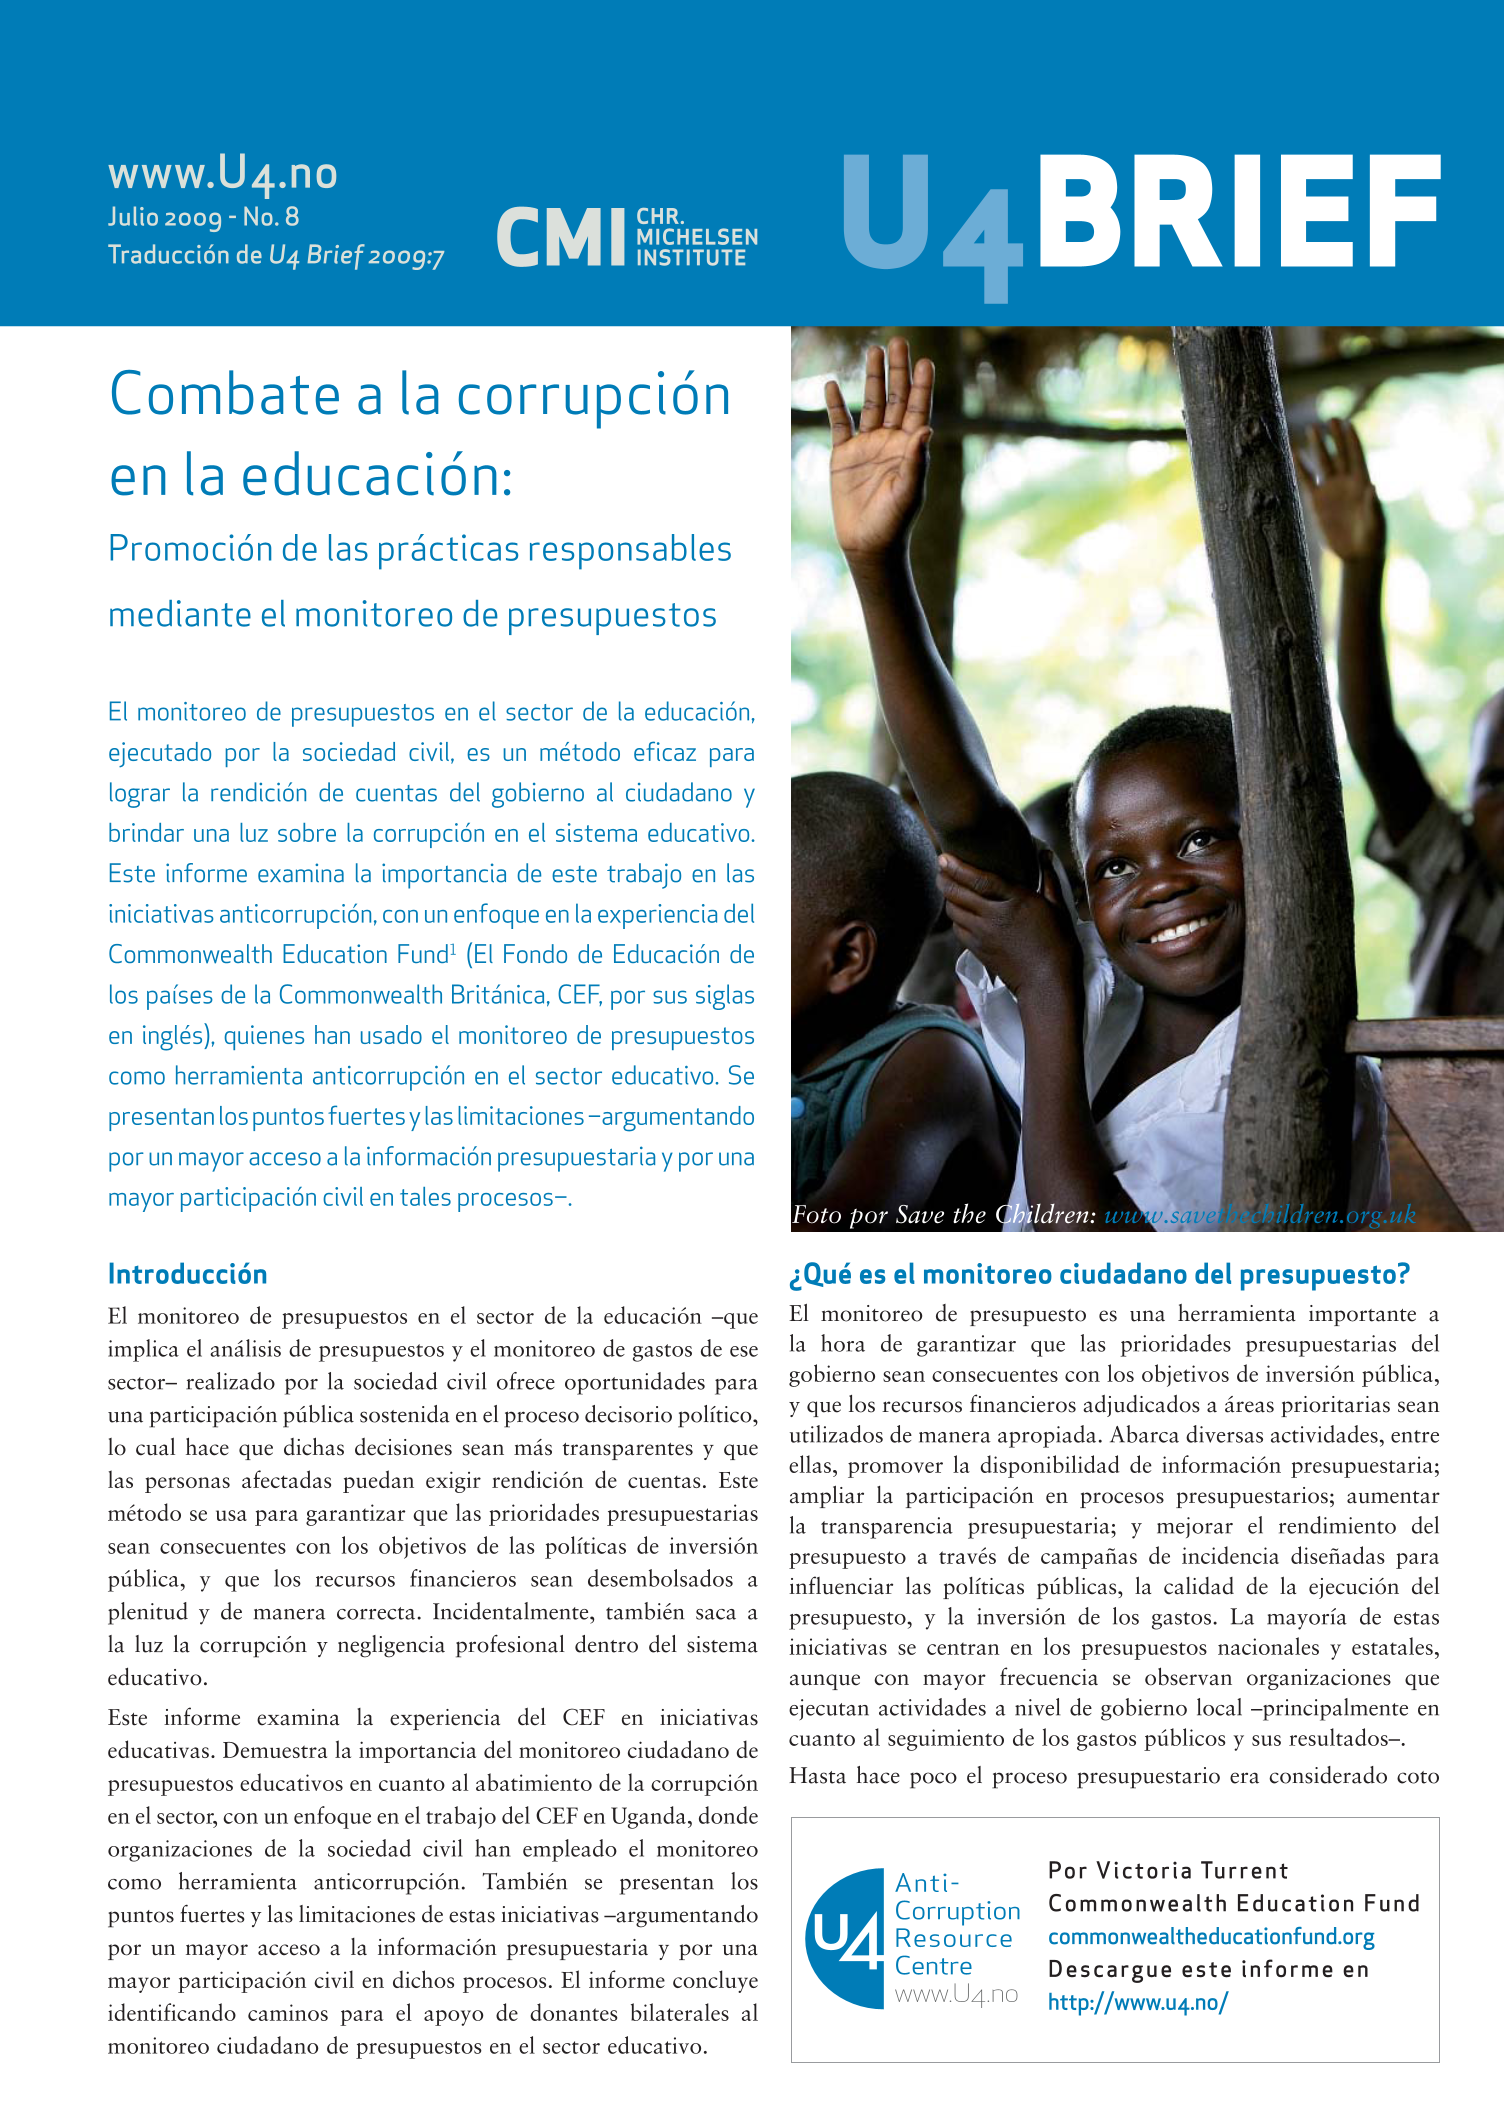 Combate a la corrupción en la educación: Promoción de las prácticas responsables mediante el monitoreo de presupuestos